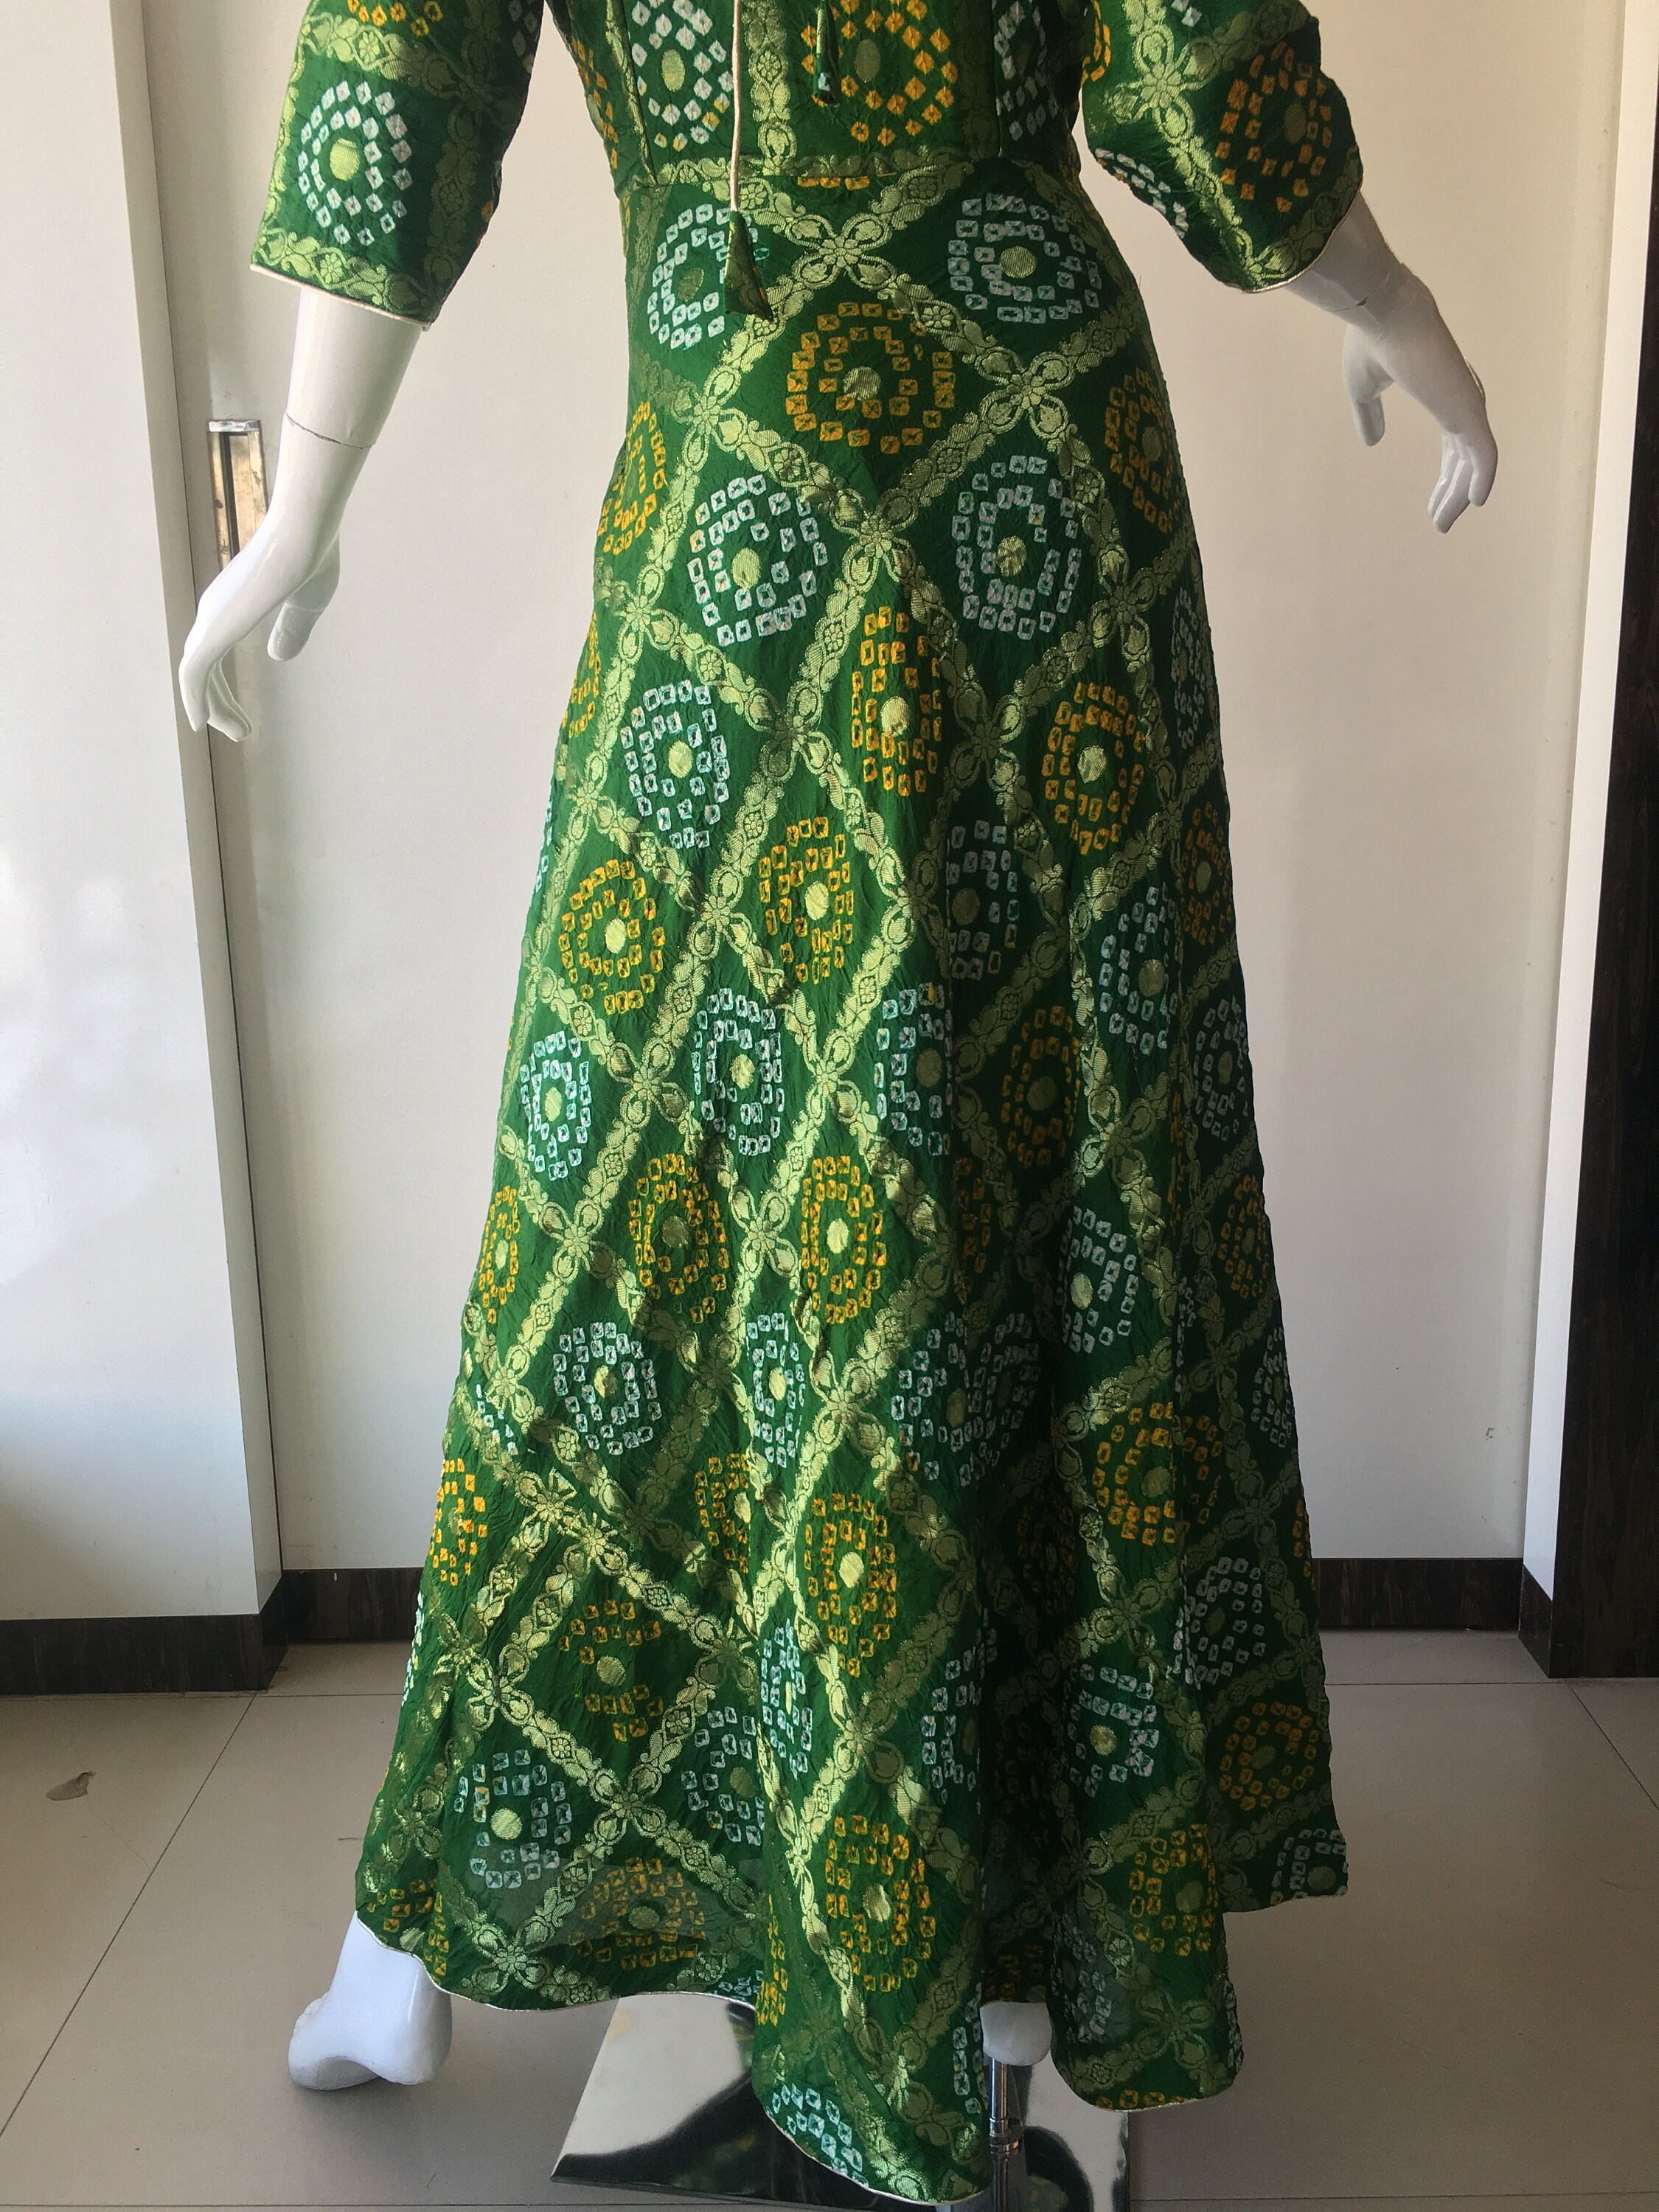 Banarsi Silk Ethnic Designer Bandhani Bandhej Gown Dress Party | Etsy